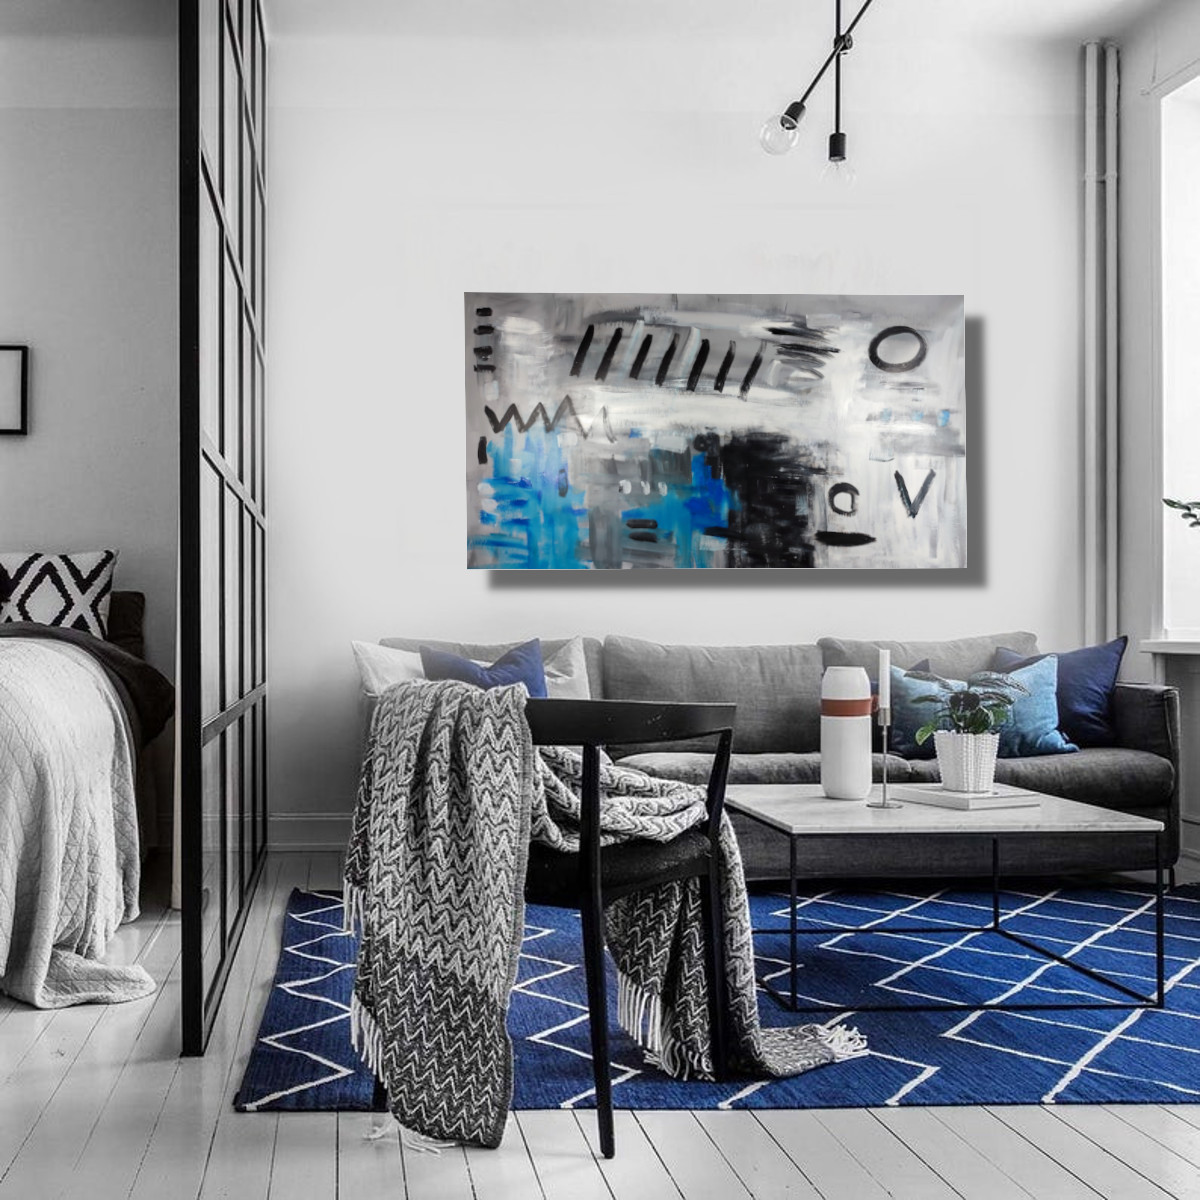 soggiorno blu quadro moderno c841 - Quali sono le tendenze attuali nel design dei quadri per il soggiorno?